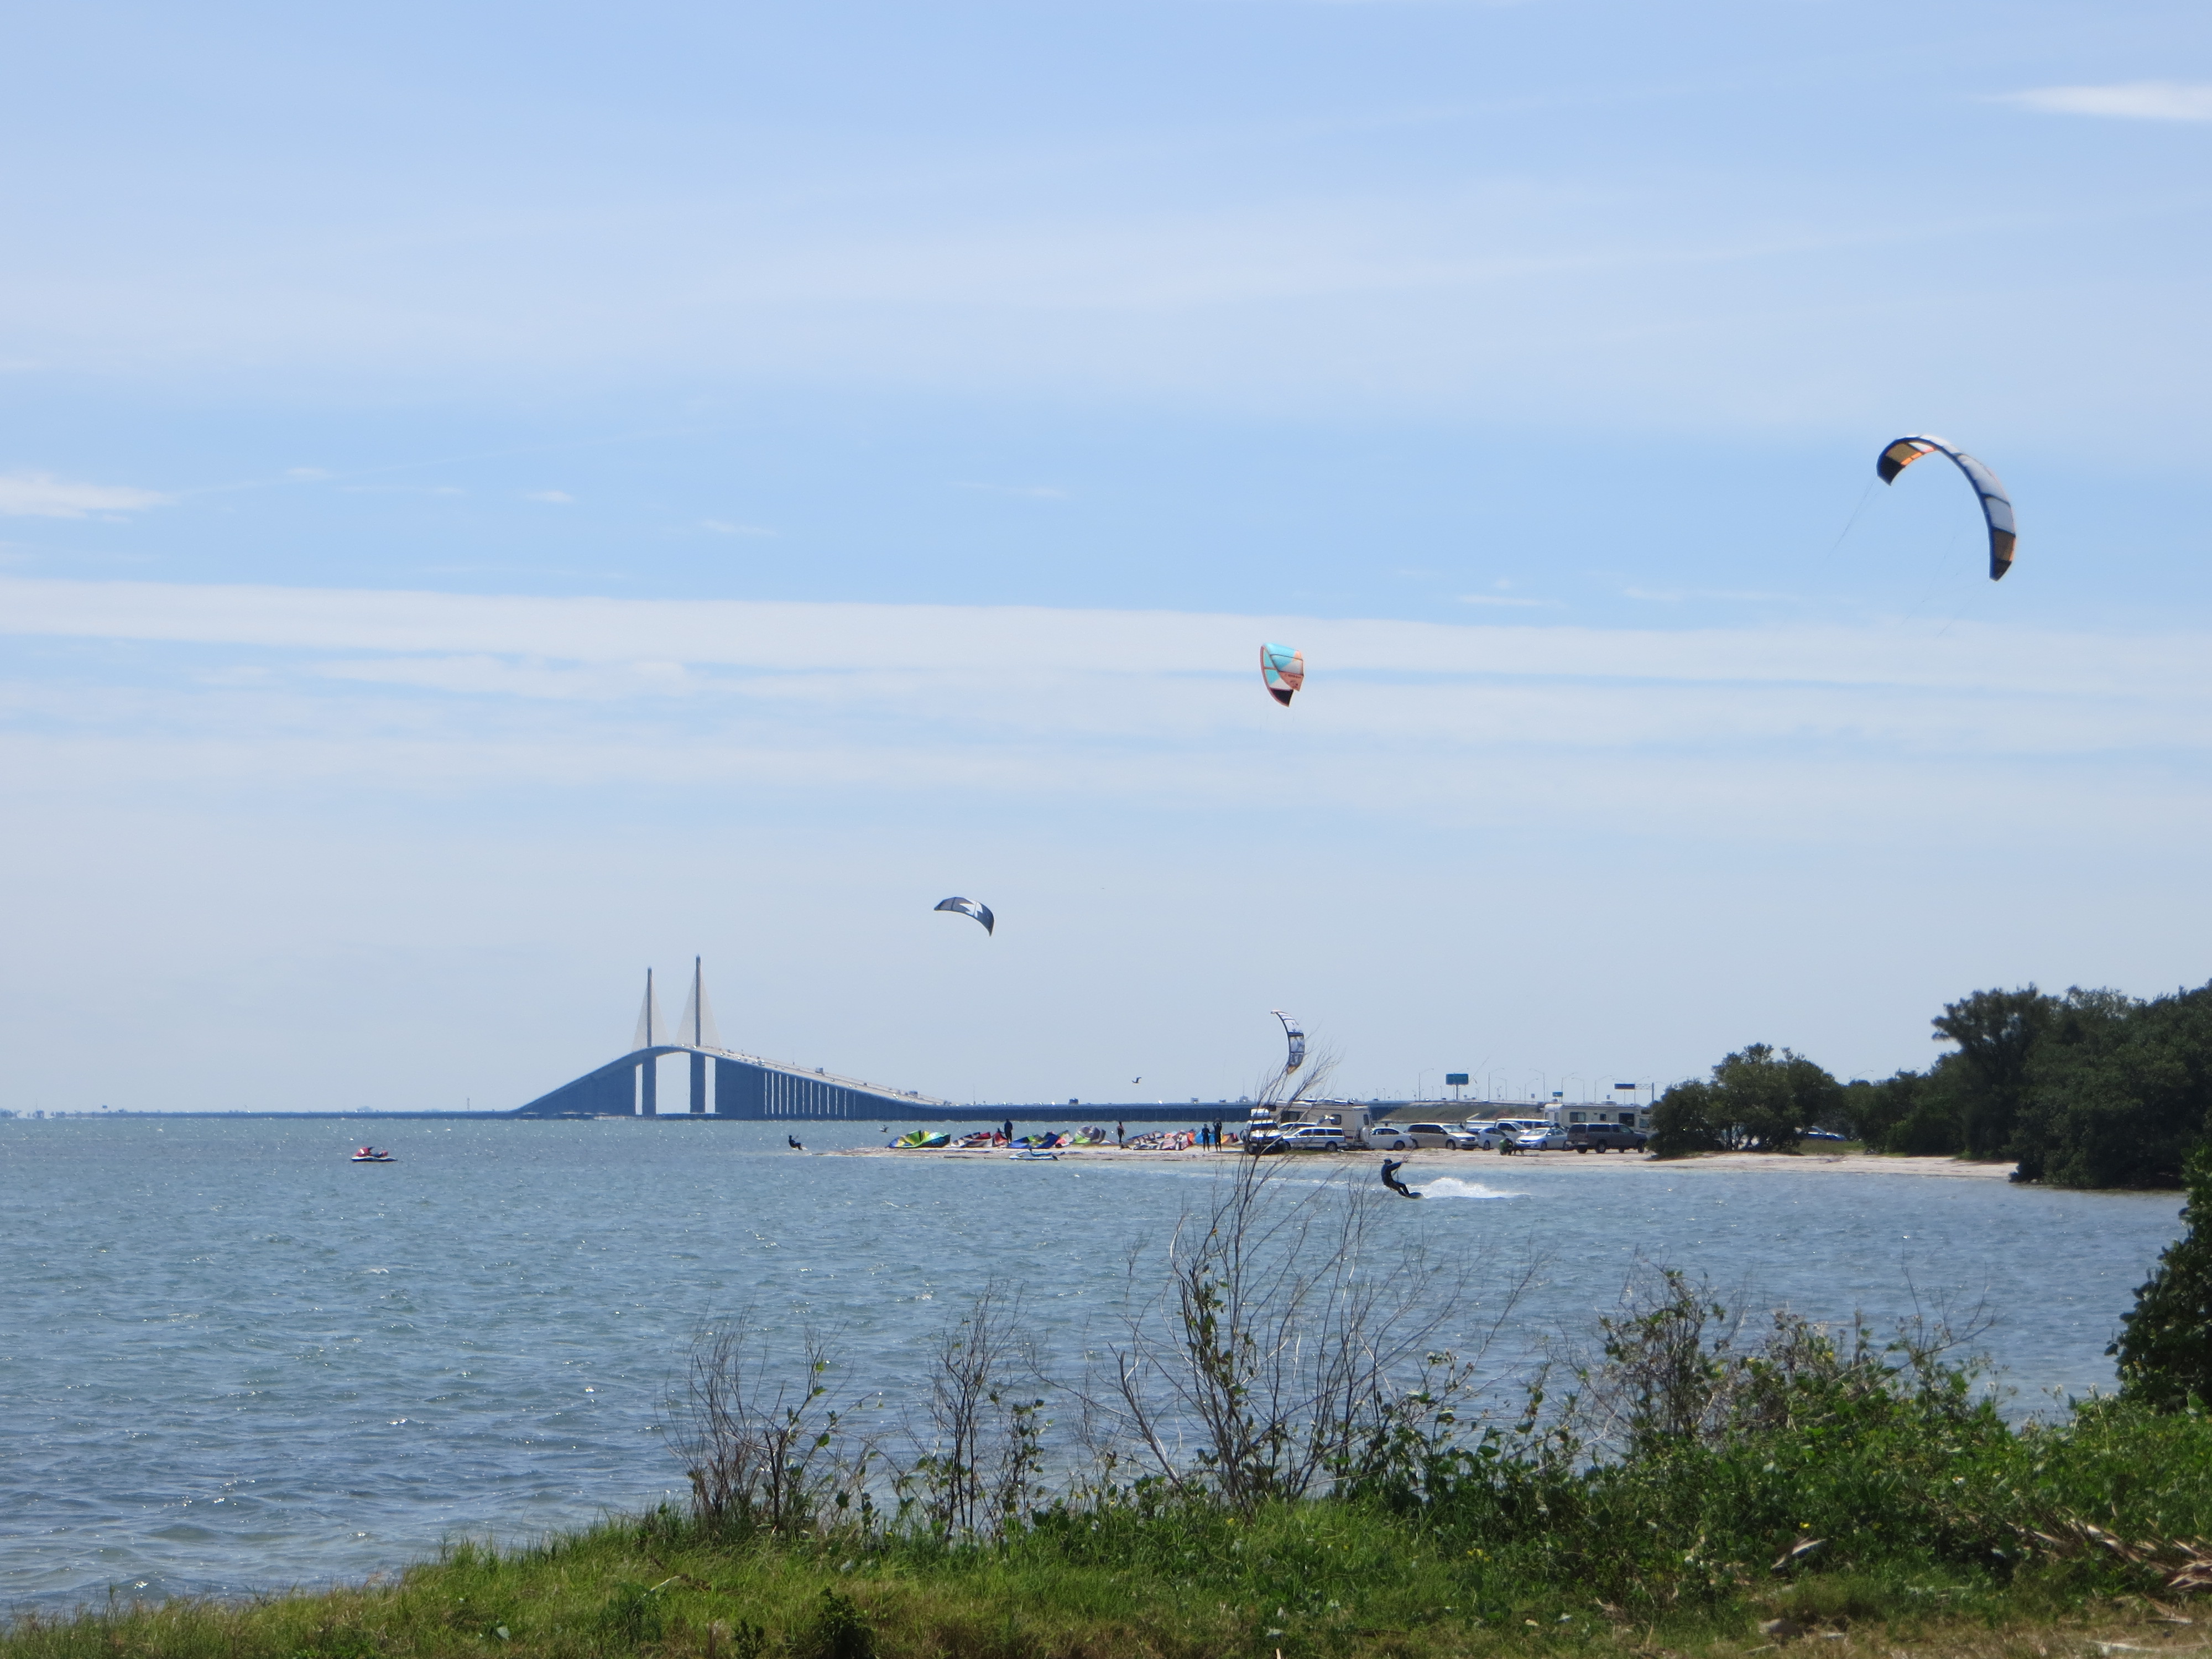 Zahlreiche Kitesurfer nutzen die idealen Bedingungen in der Buch vor St. Petersburg - im Hintergrund die Sunshine Skyway Bridge